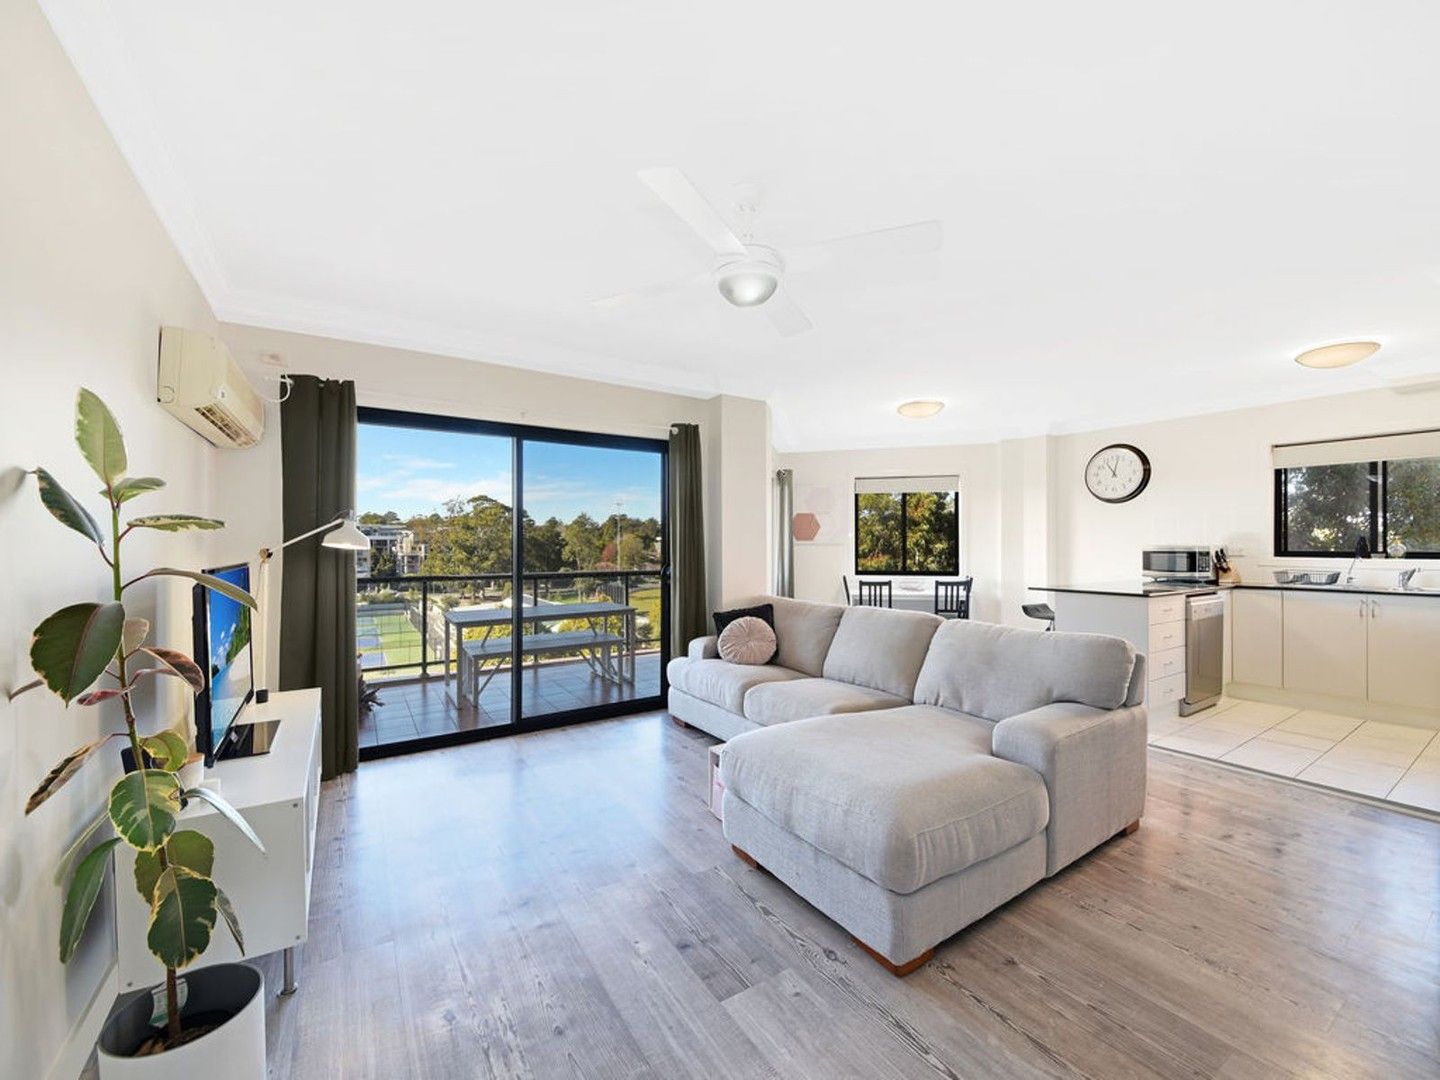 2 bedrooms Apartment / Unit / Flat in 33/47 Waitara Avenue WAITARA NSW, 2077